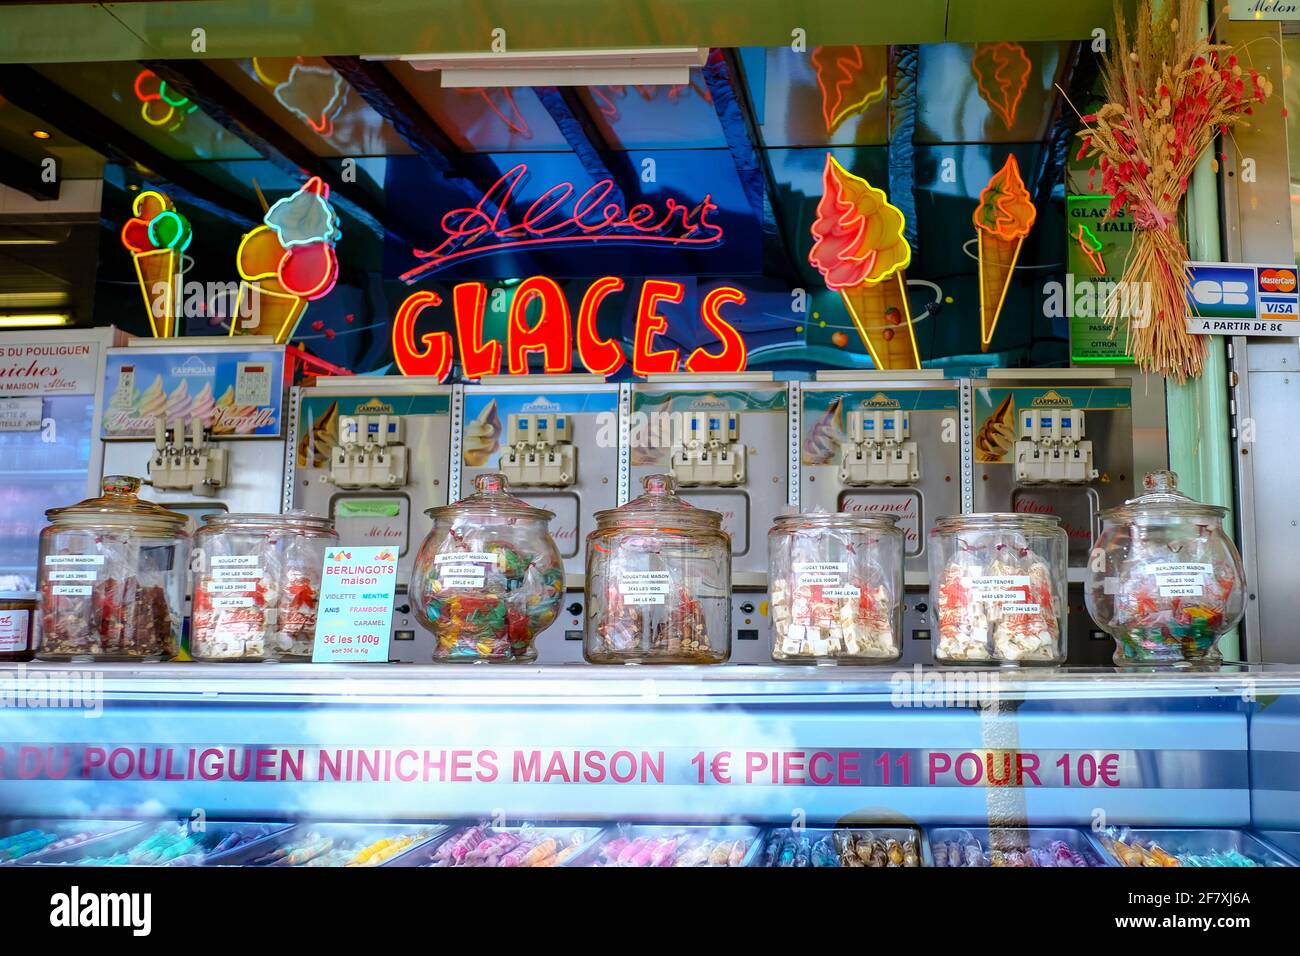 Frankreich, Le Pouliguen, 10.07.2020: Albert Glaces, Verkaufsstand mit Eis und Suessigkeiten im Hafen von Le Pouliguen an der franzoesischen Atlantikk Stock Photo